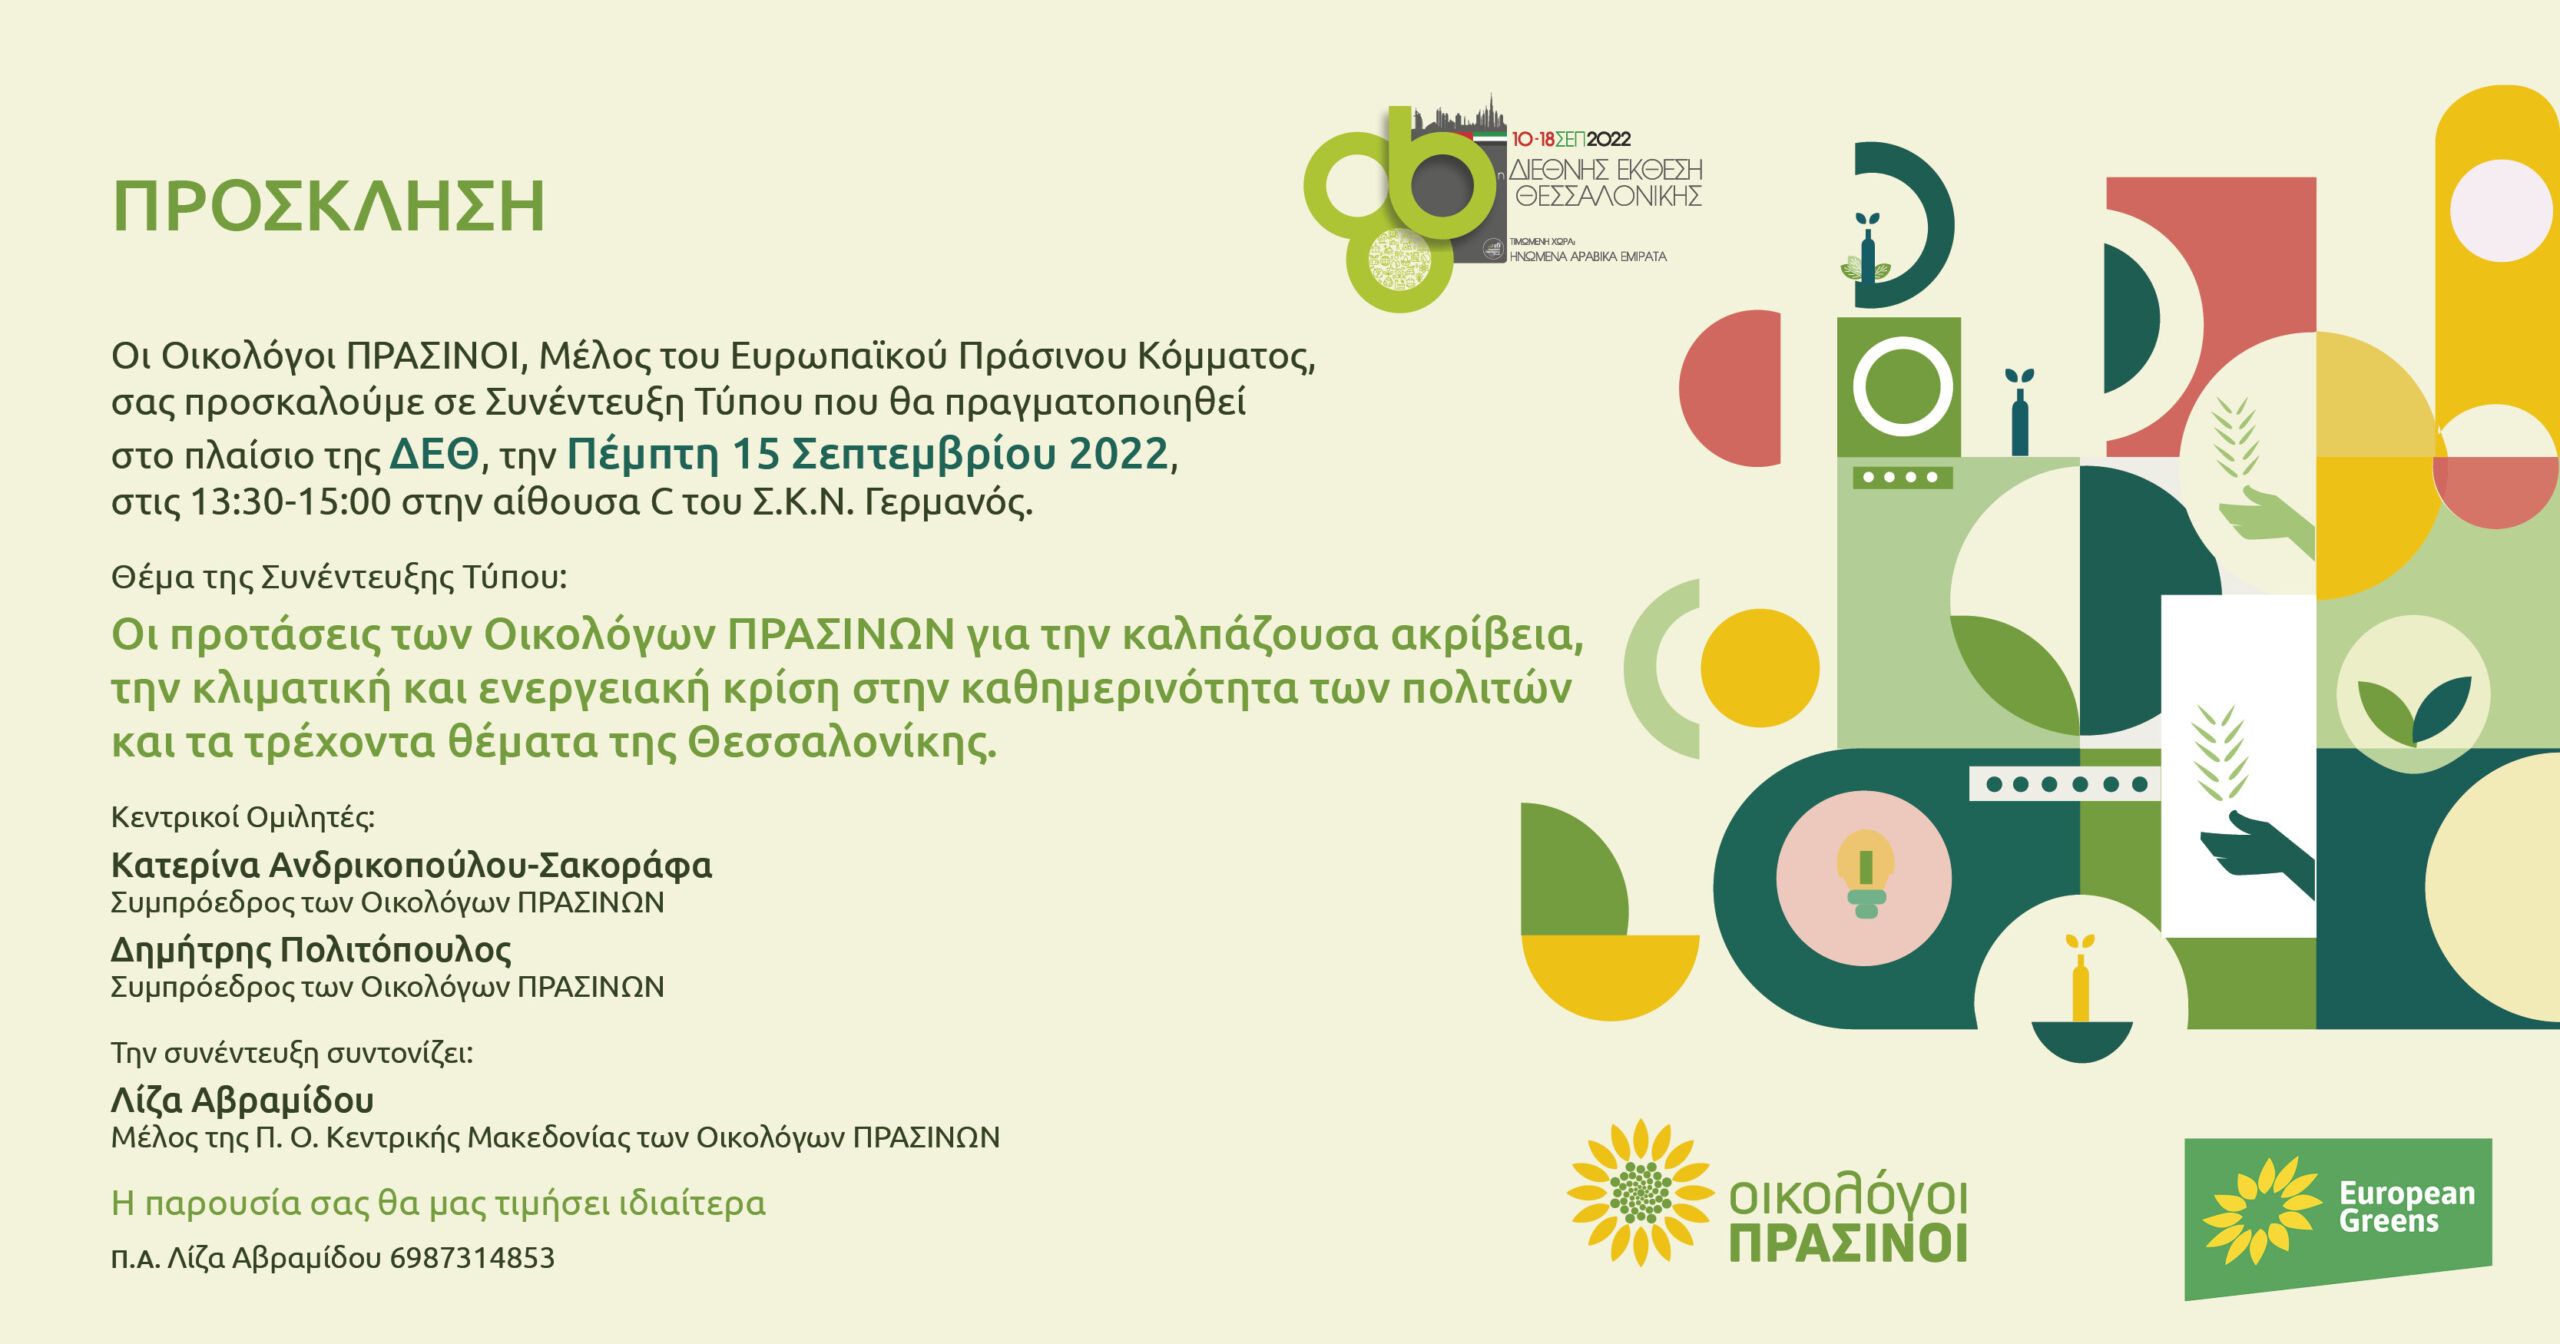 Οι Οικολόγοι ΠΡΑΣΙΝΟΙ, Μέλος του Ευρωπαϊκού Πράσινου Κόμματος, σας προσκαλούμε σε Συνέντευξη Τύπου που θα πραγματοποιηθεί στο πλαίσιο της ΔΕΘ την ΠΕΜΠΤΗ, 15 Σεπτεμβρίου, στις 13:30 στην αίθουσα C του […]